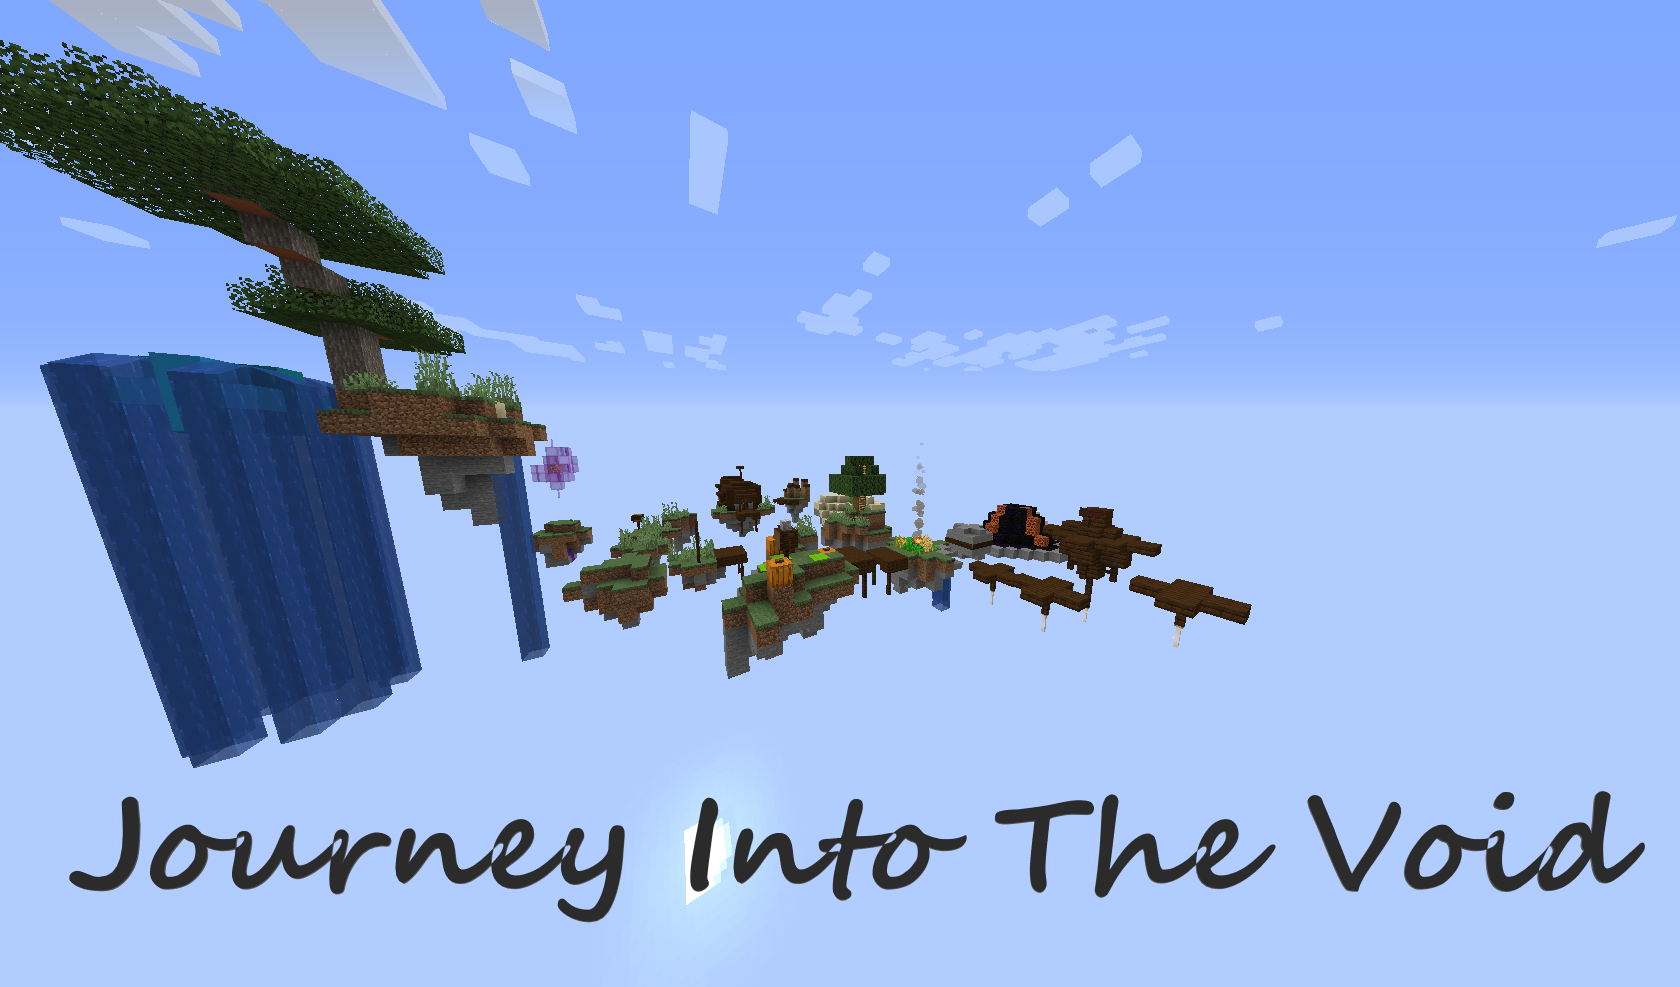 Télécharger Journey Into The Void pour Minecraft 1.14.4